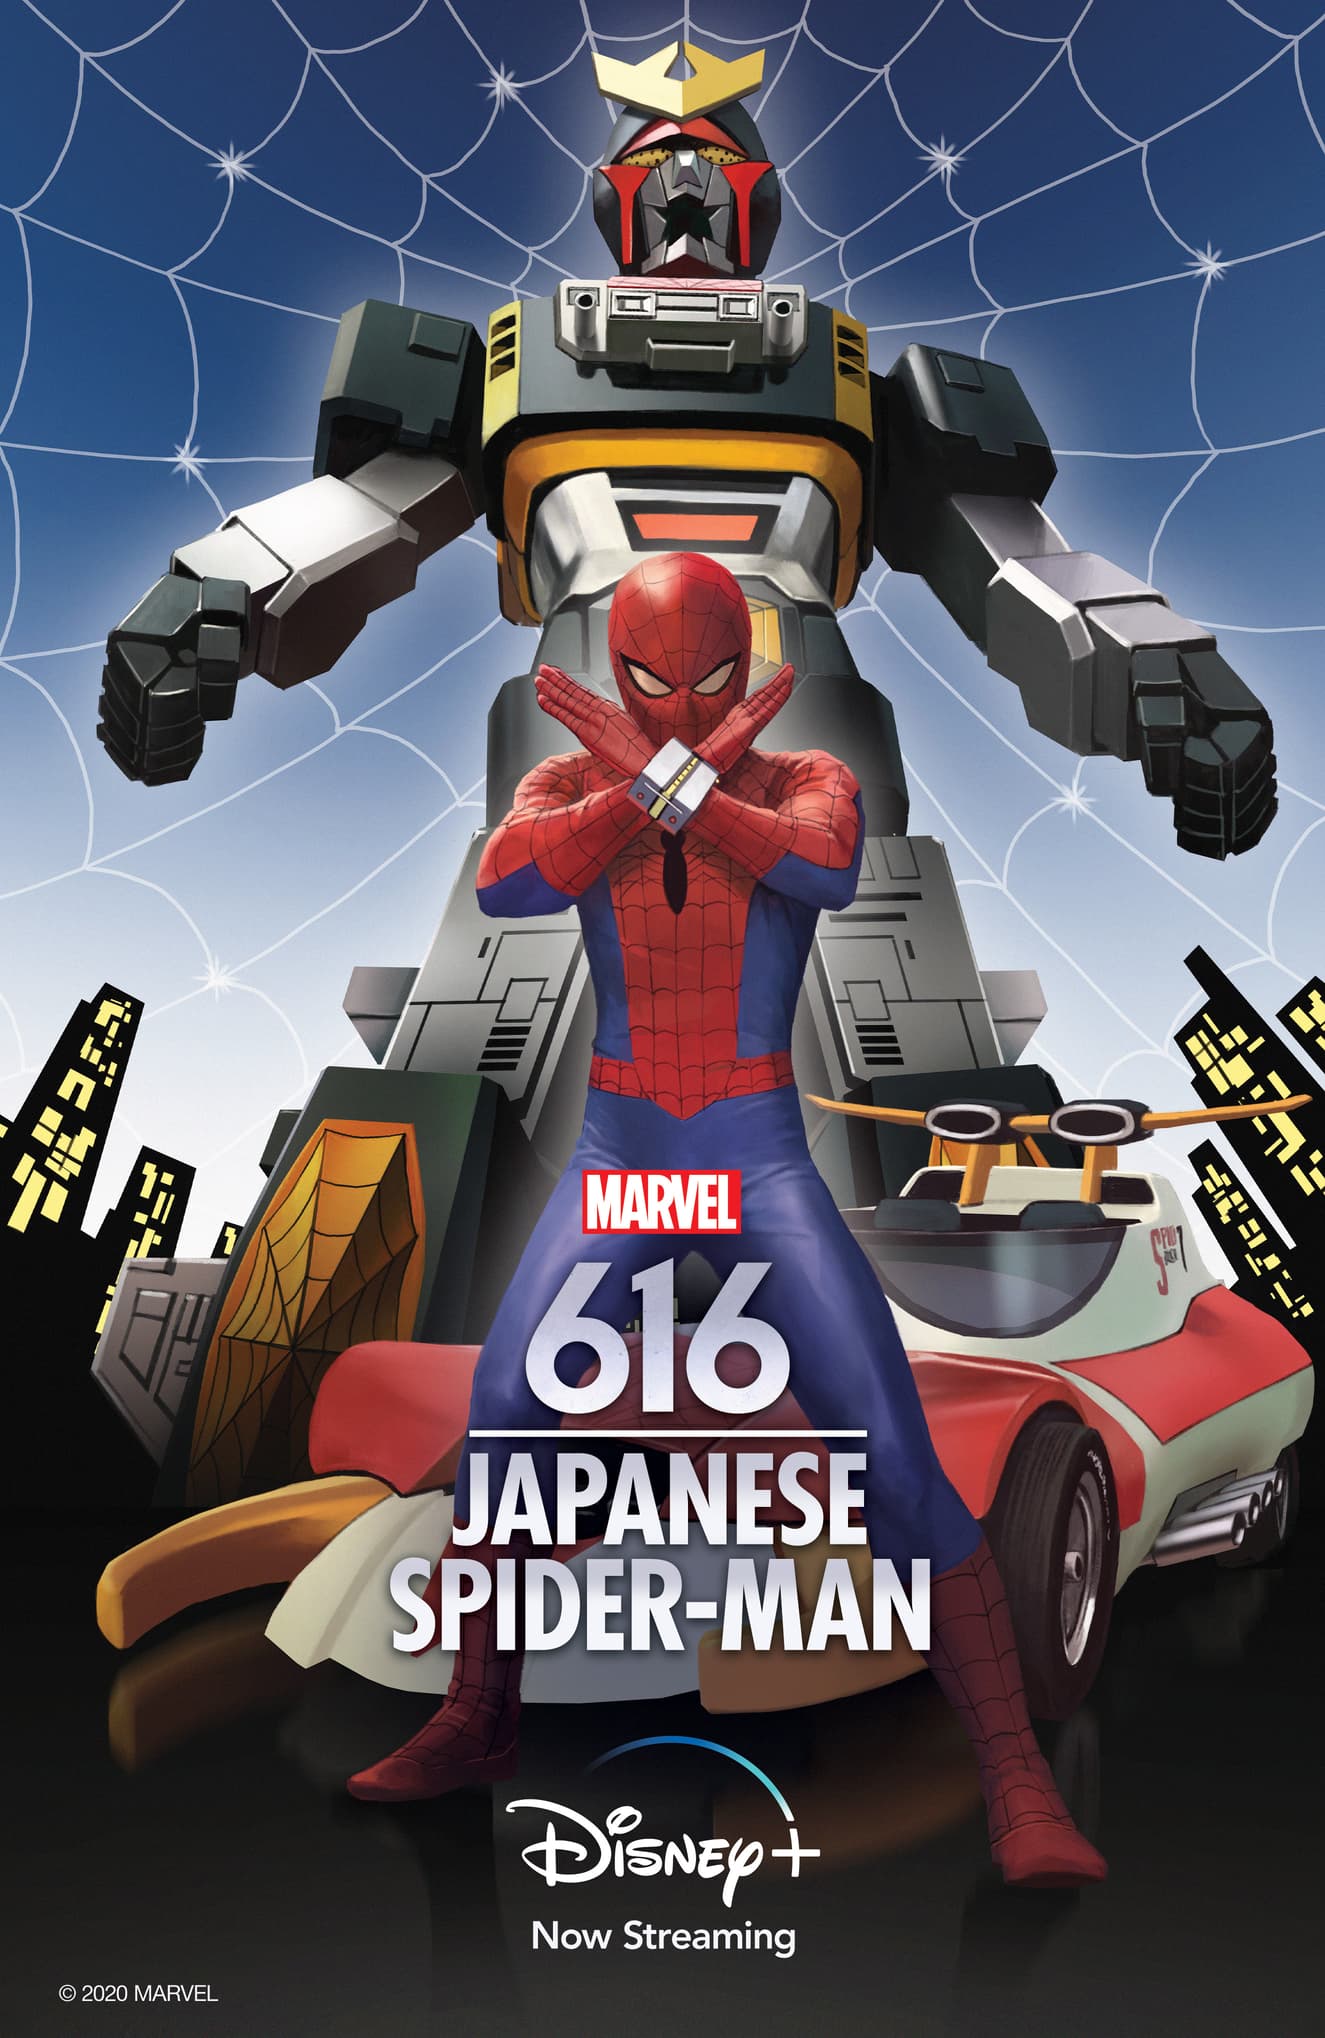 Japanese Spider-Man Marvel's 616